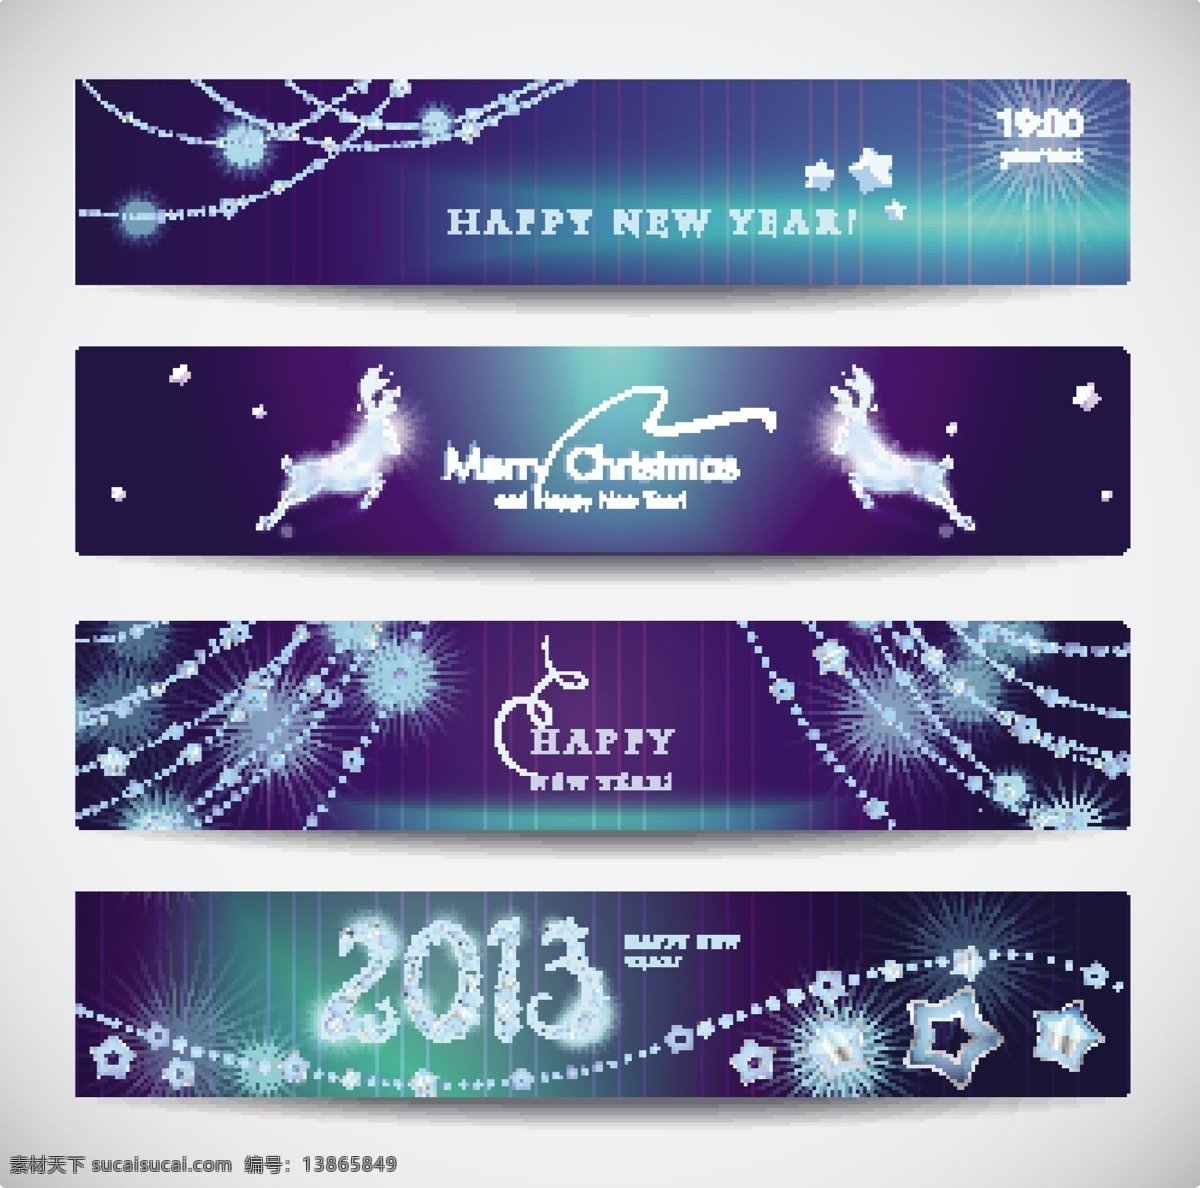 2013 新年 banner 矢量 潮流时尚 标签 标贴 横幅 星光 光晕 星星 麋鹿 梦幻 格式